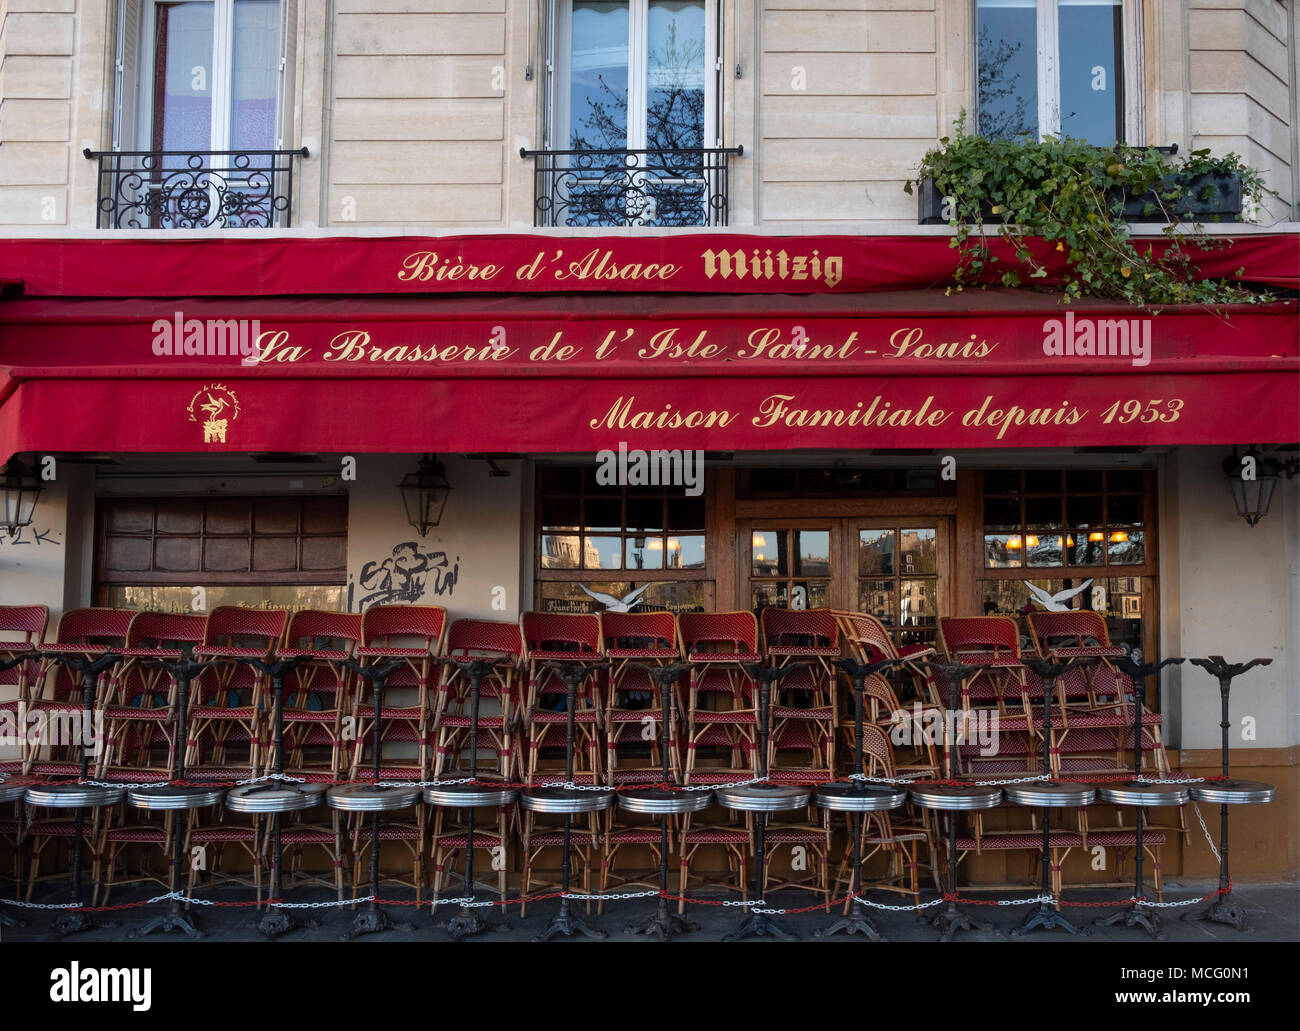 Brasserie de llsle saint louis paris hi-res stock photography and ...